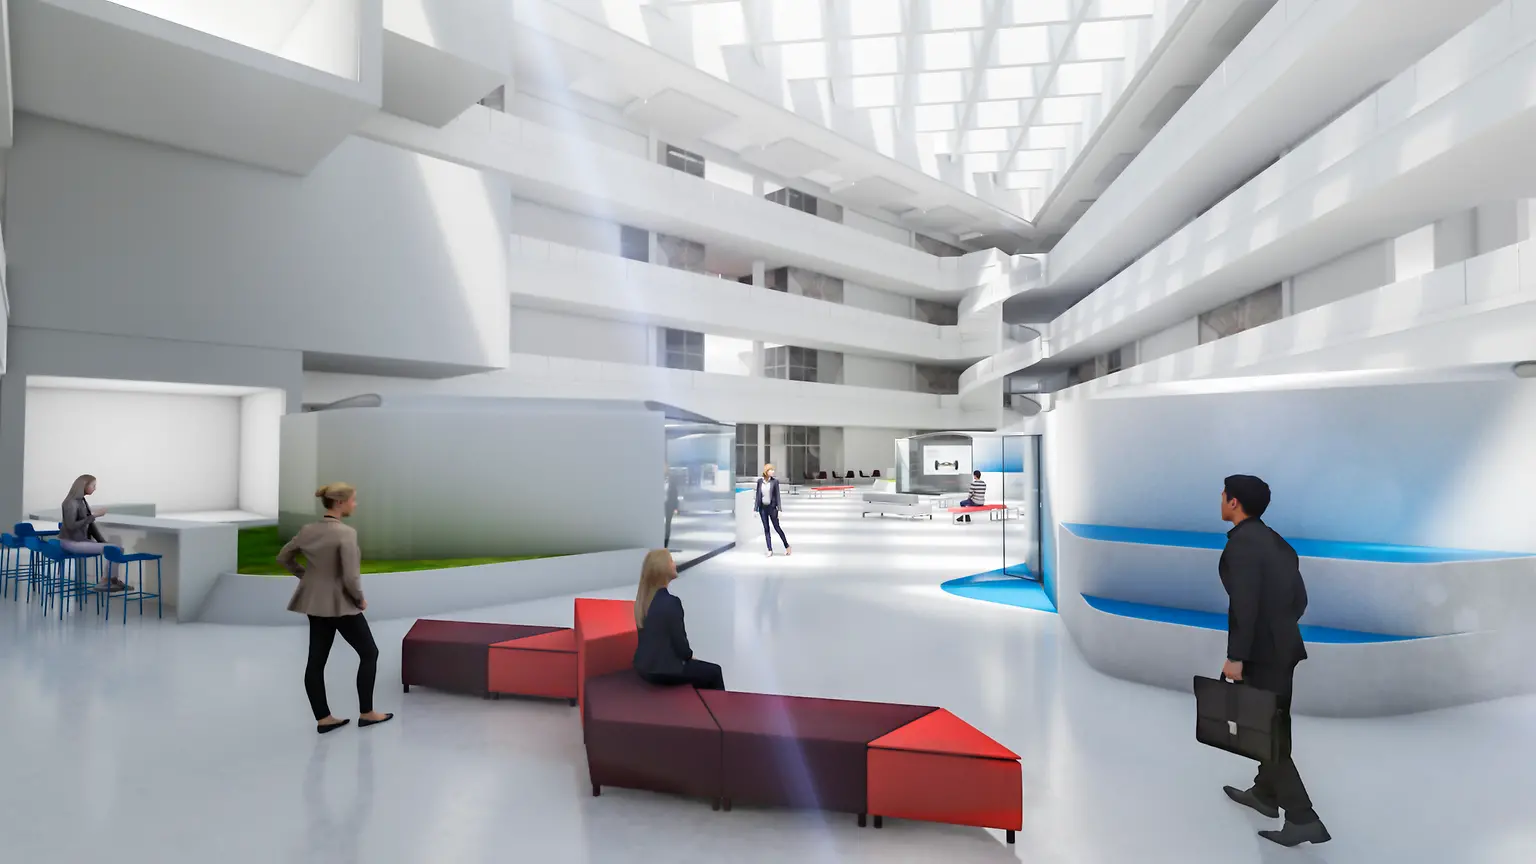 
Das moderne Gebäude wird Labore, Forschungseinrichtungen, Büroarbeitsplätze und Konferenzräume haben und Platz für mehr als 350 Innovationsmitarbeiter bieten. 